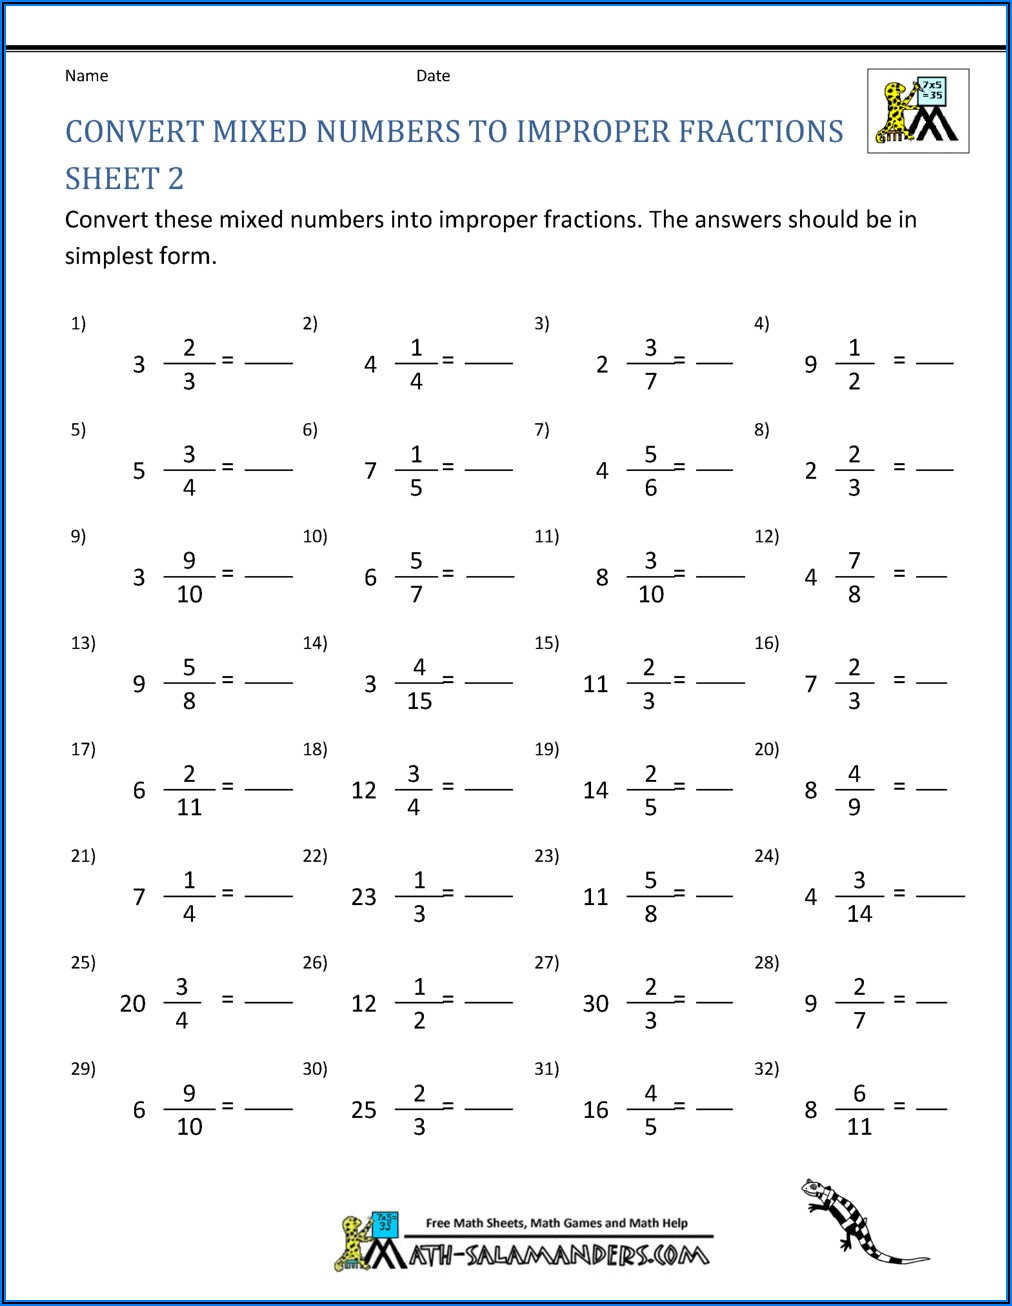 Improper Fraction To Mixed Number Worksheet Pdf